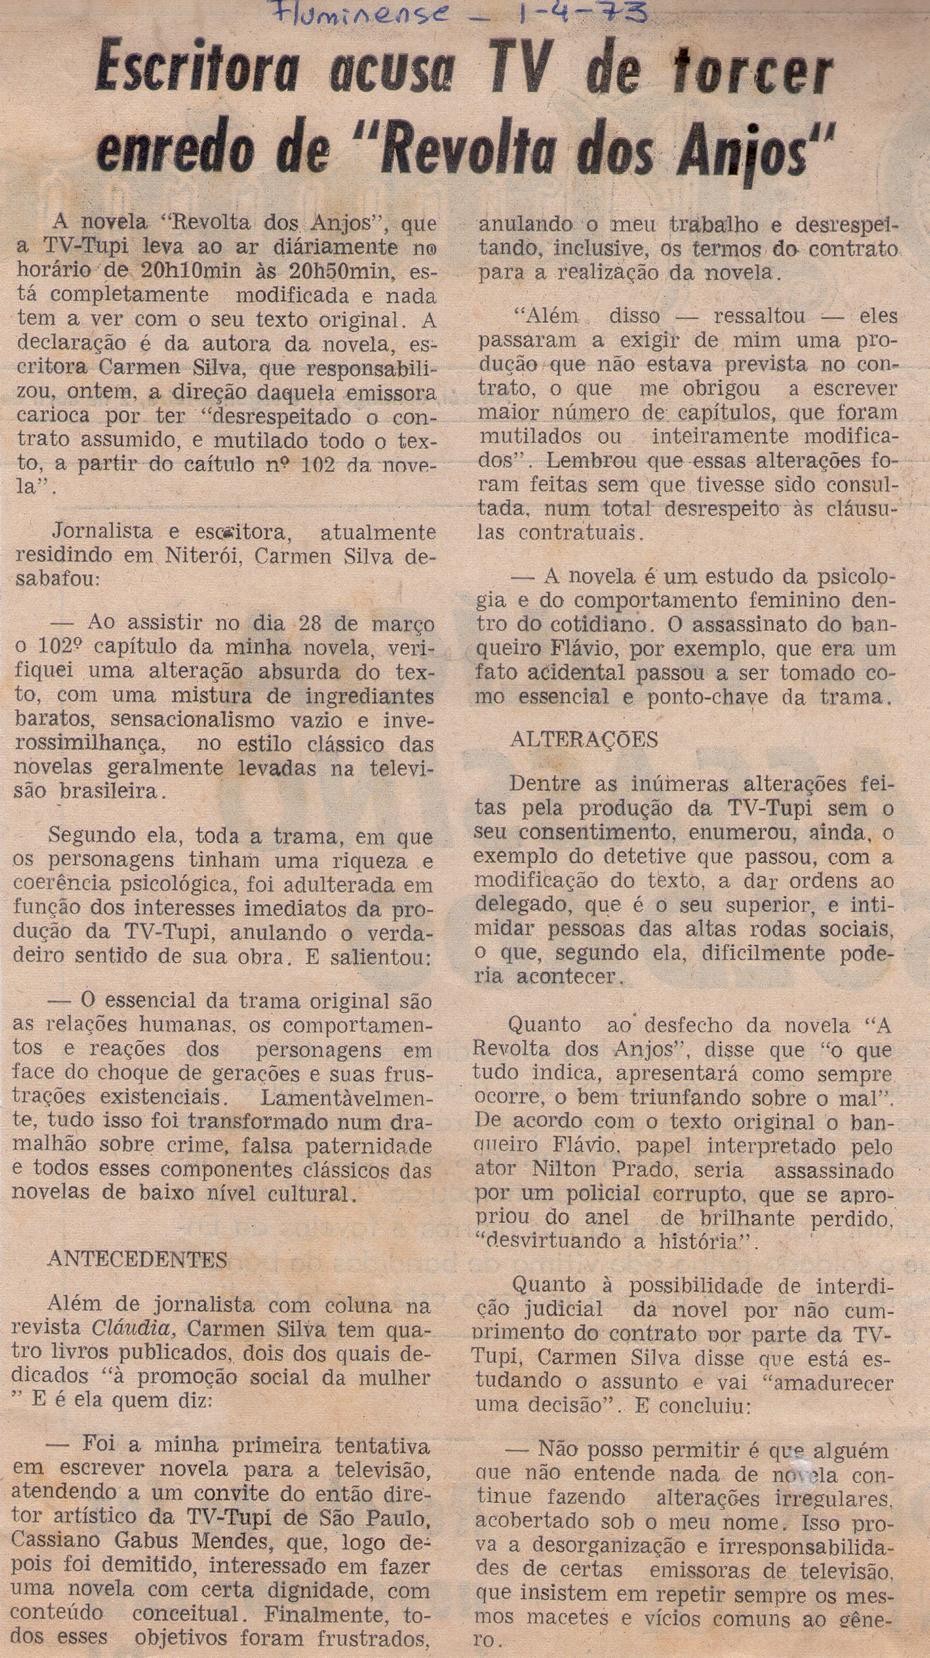 01 de Abril de 1973 - Fluminense. Escritora acusa TV de torcer enredo de Revolta dos Anjos.